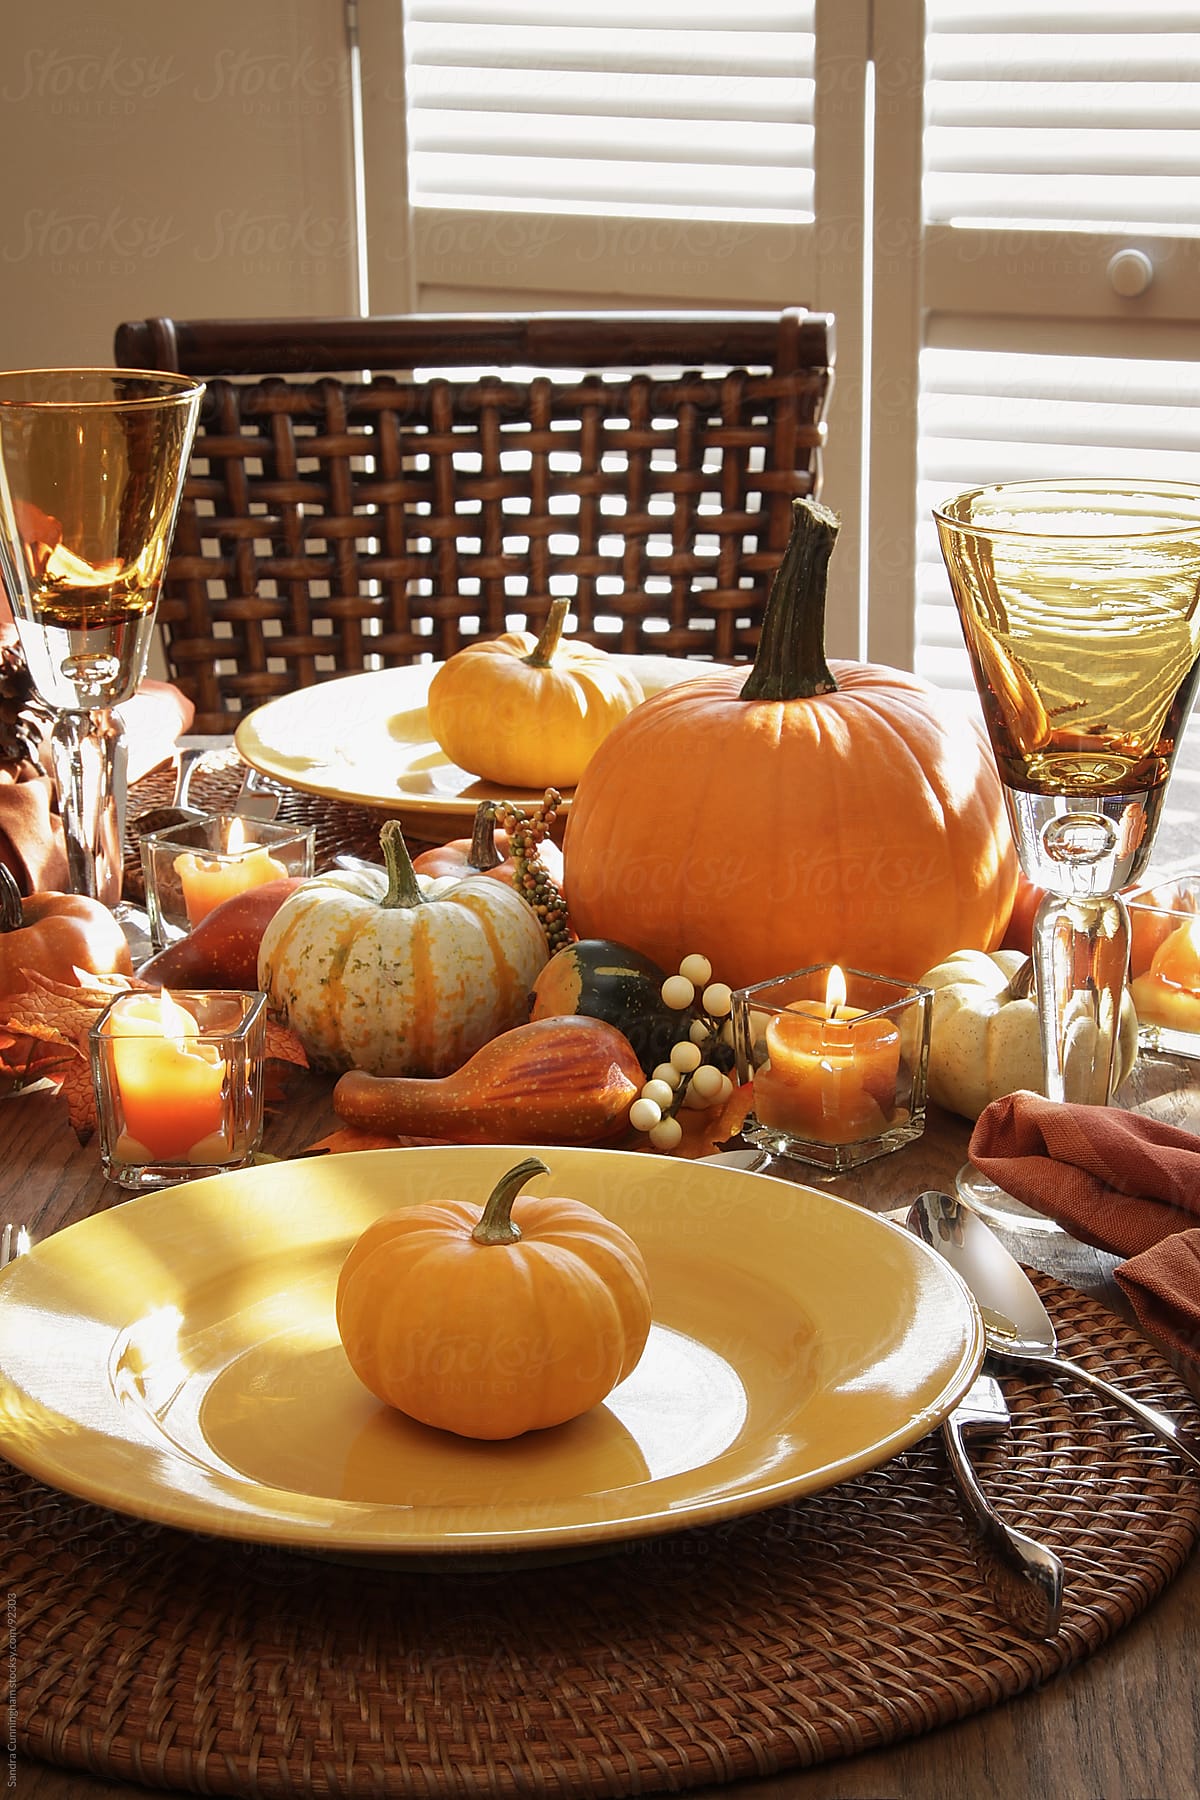 Festive table for thanksgiving dinner